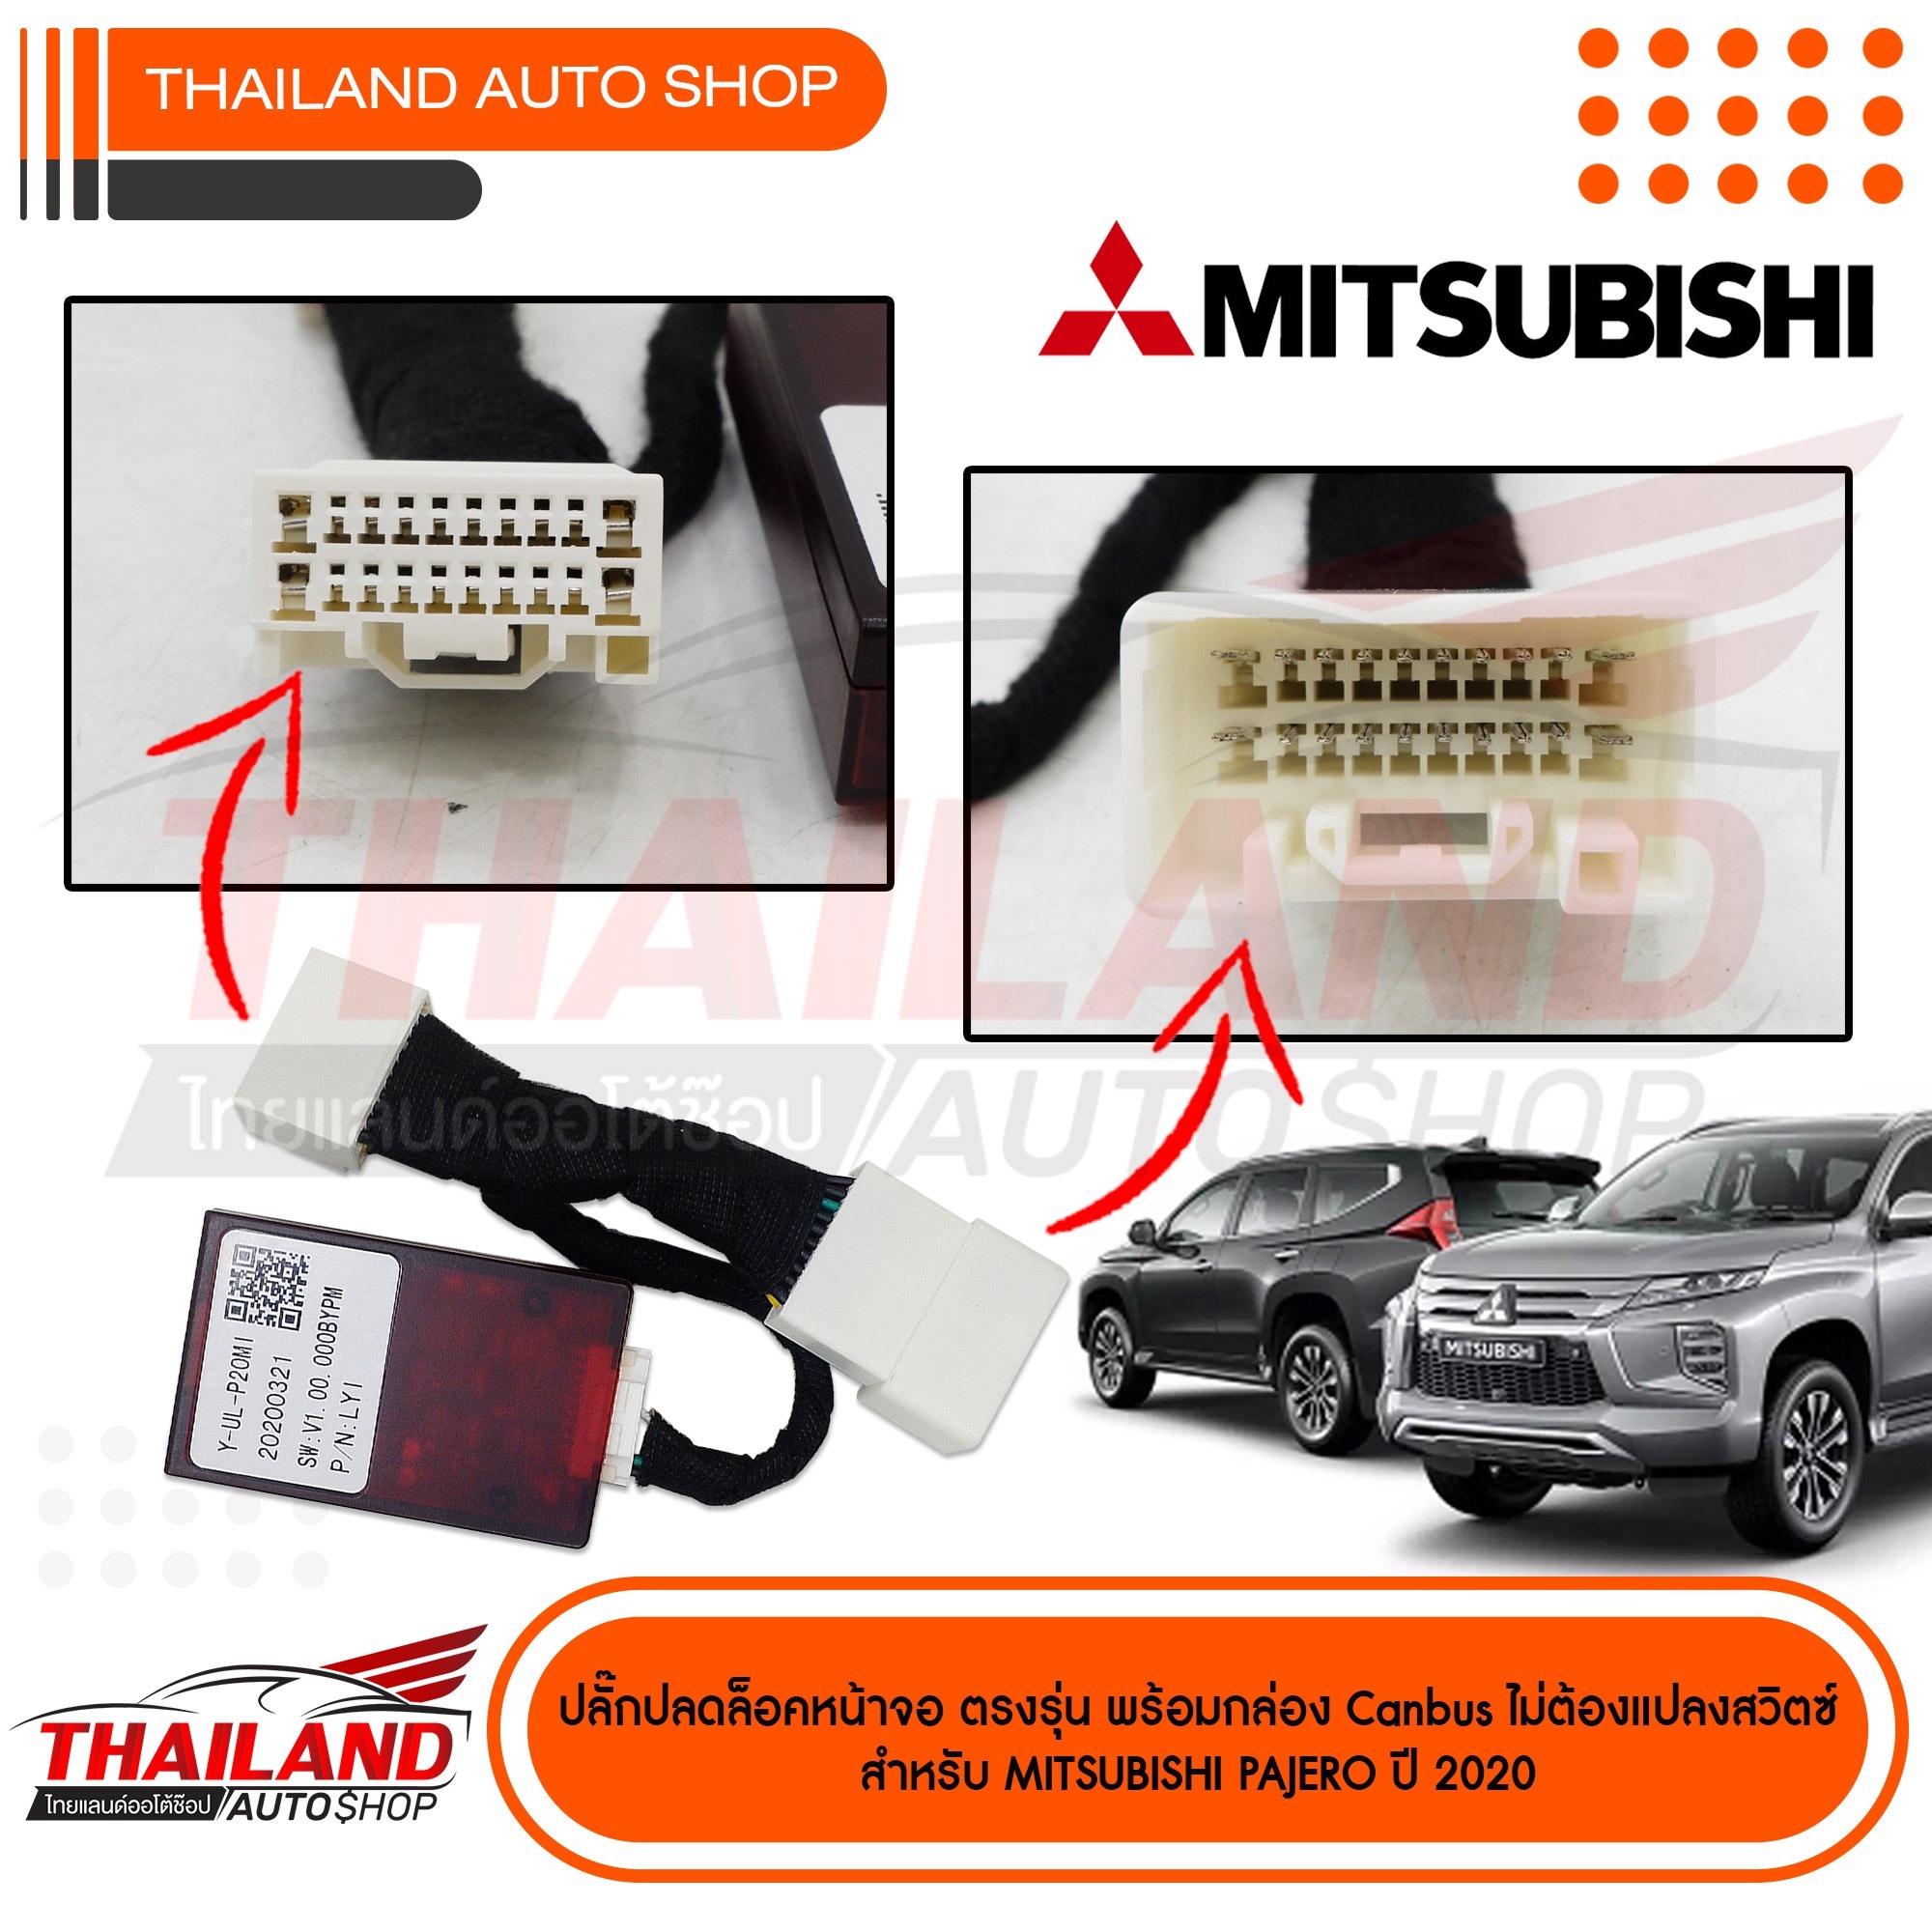 ปลั๊กปลดล็อค ตรงรุ่นสำหรับ MITSUBISHI PAJERO 2020 (ปลดล็อค HDMI/USB) ใช้สำหรับปลดล๊อคหน้าจอให้ดูหนังได้ในขณะที่รถวิ่ง